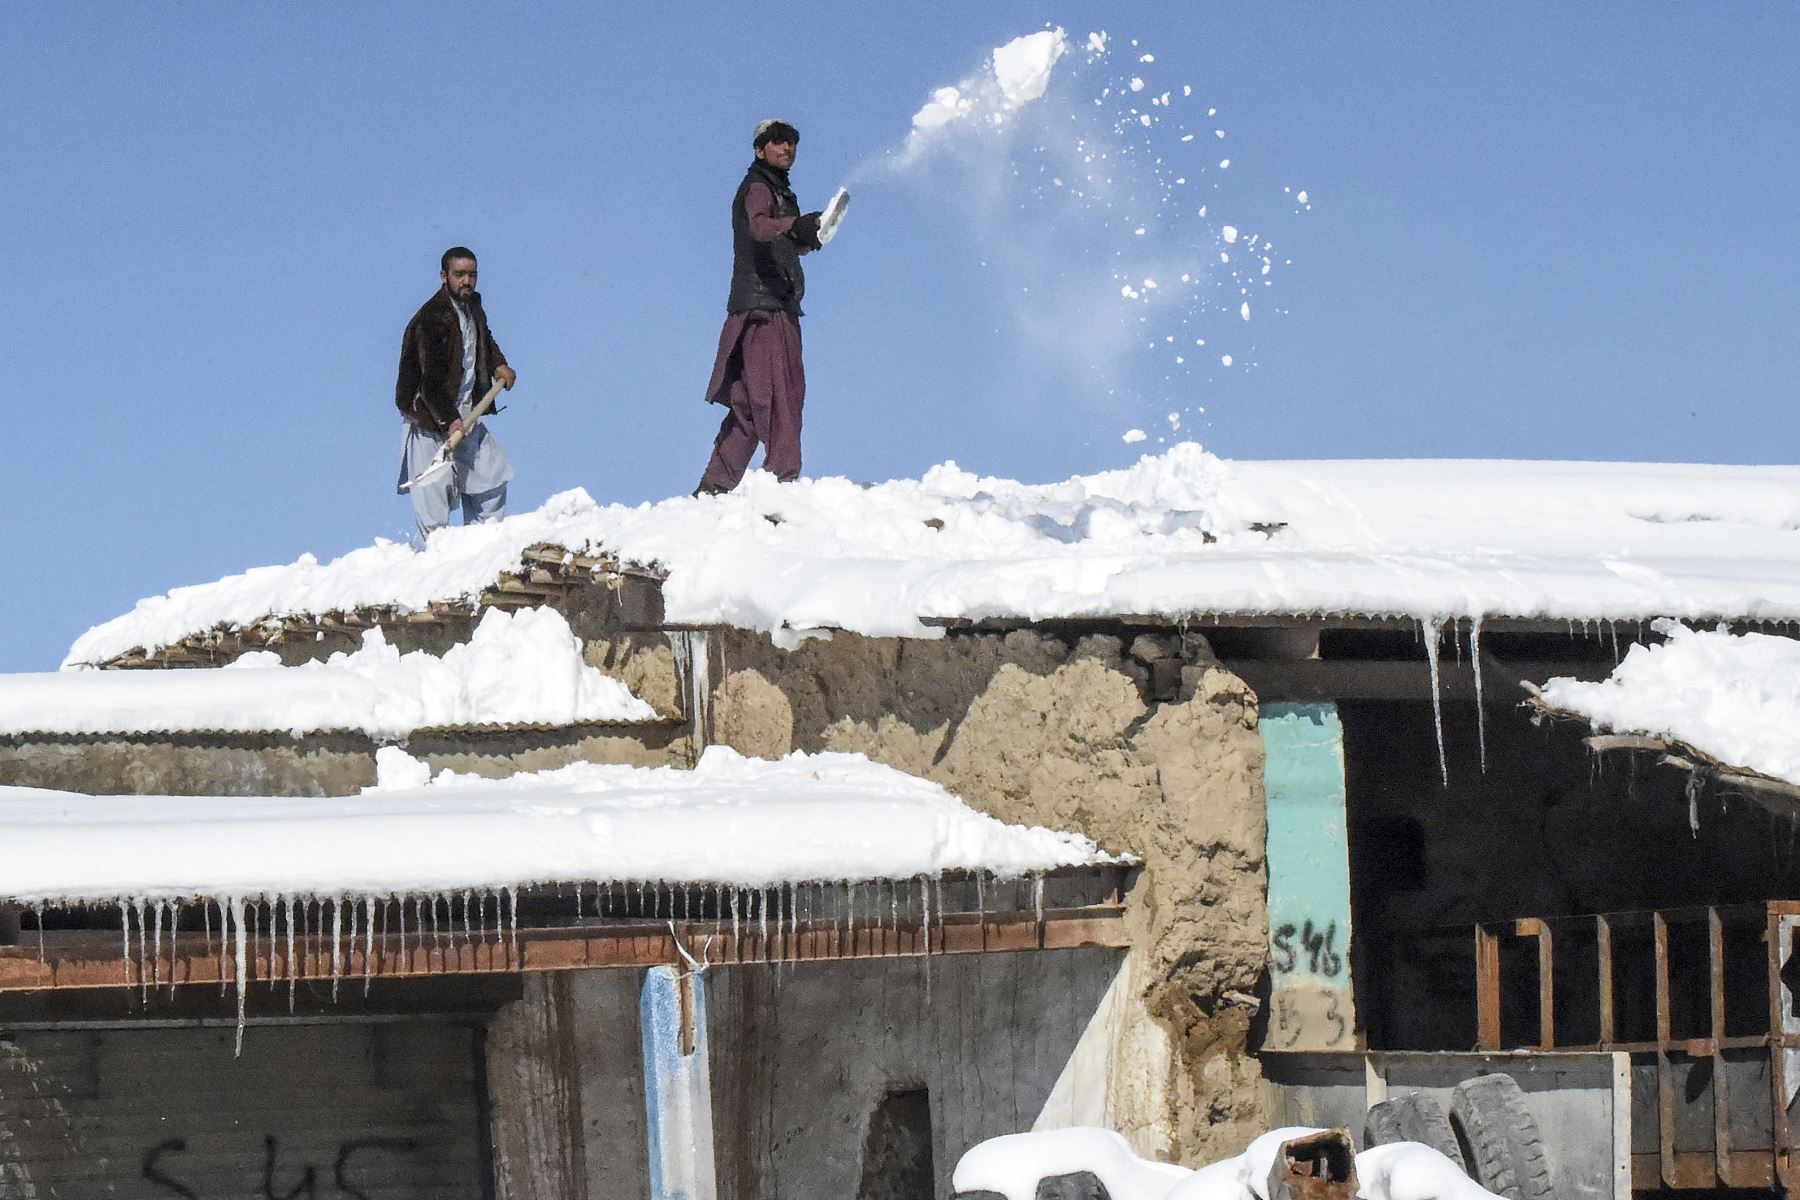 Trabajadores retiran la nieve del techo de un hotel después de fuertes nevadas en el área de Khanozai, a unos 75 kilómetros al noreste de la capital de la provincia de Quetta. Foto: AFP